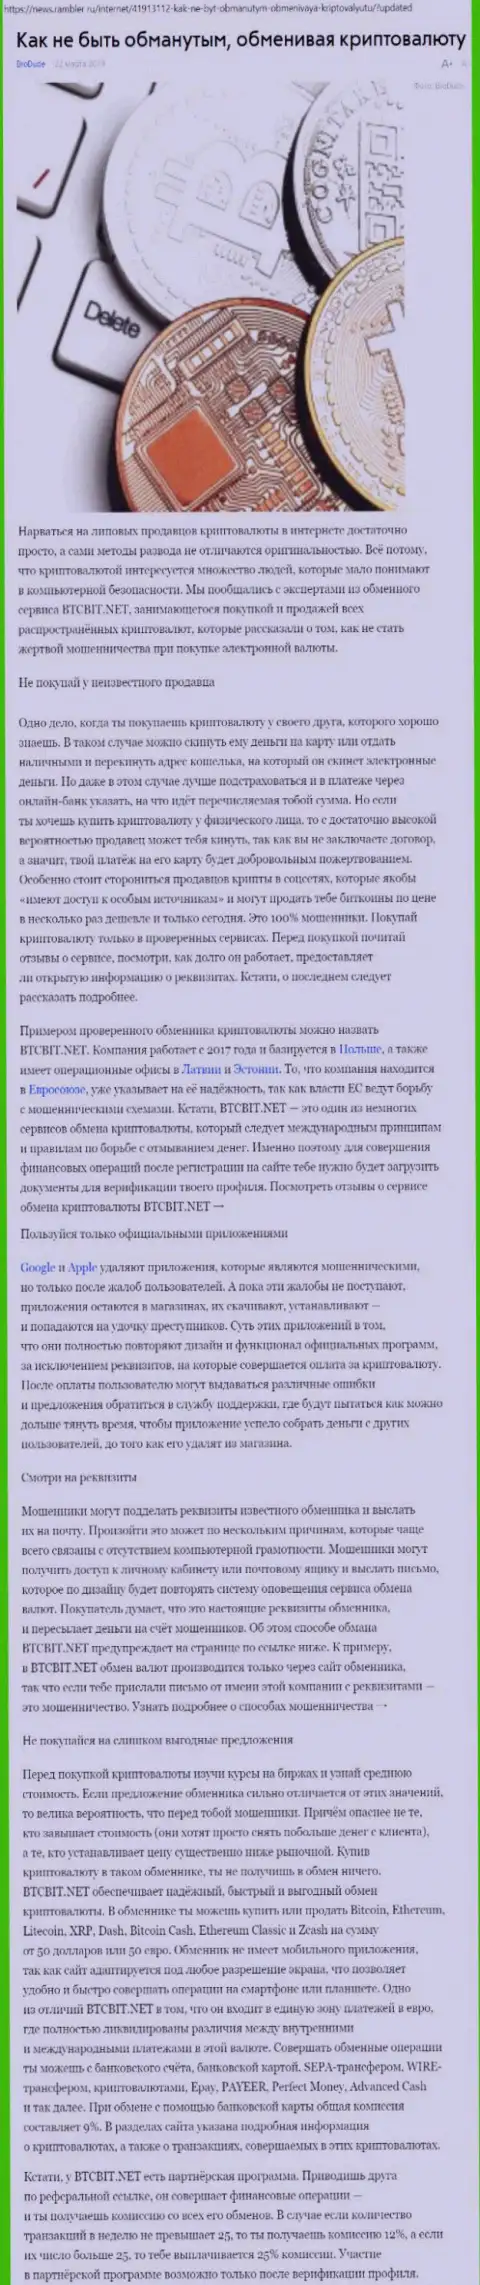 Статья об online-обменнике БТЦБИТ Сп. з.о.о. на news rambler ru